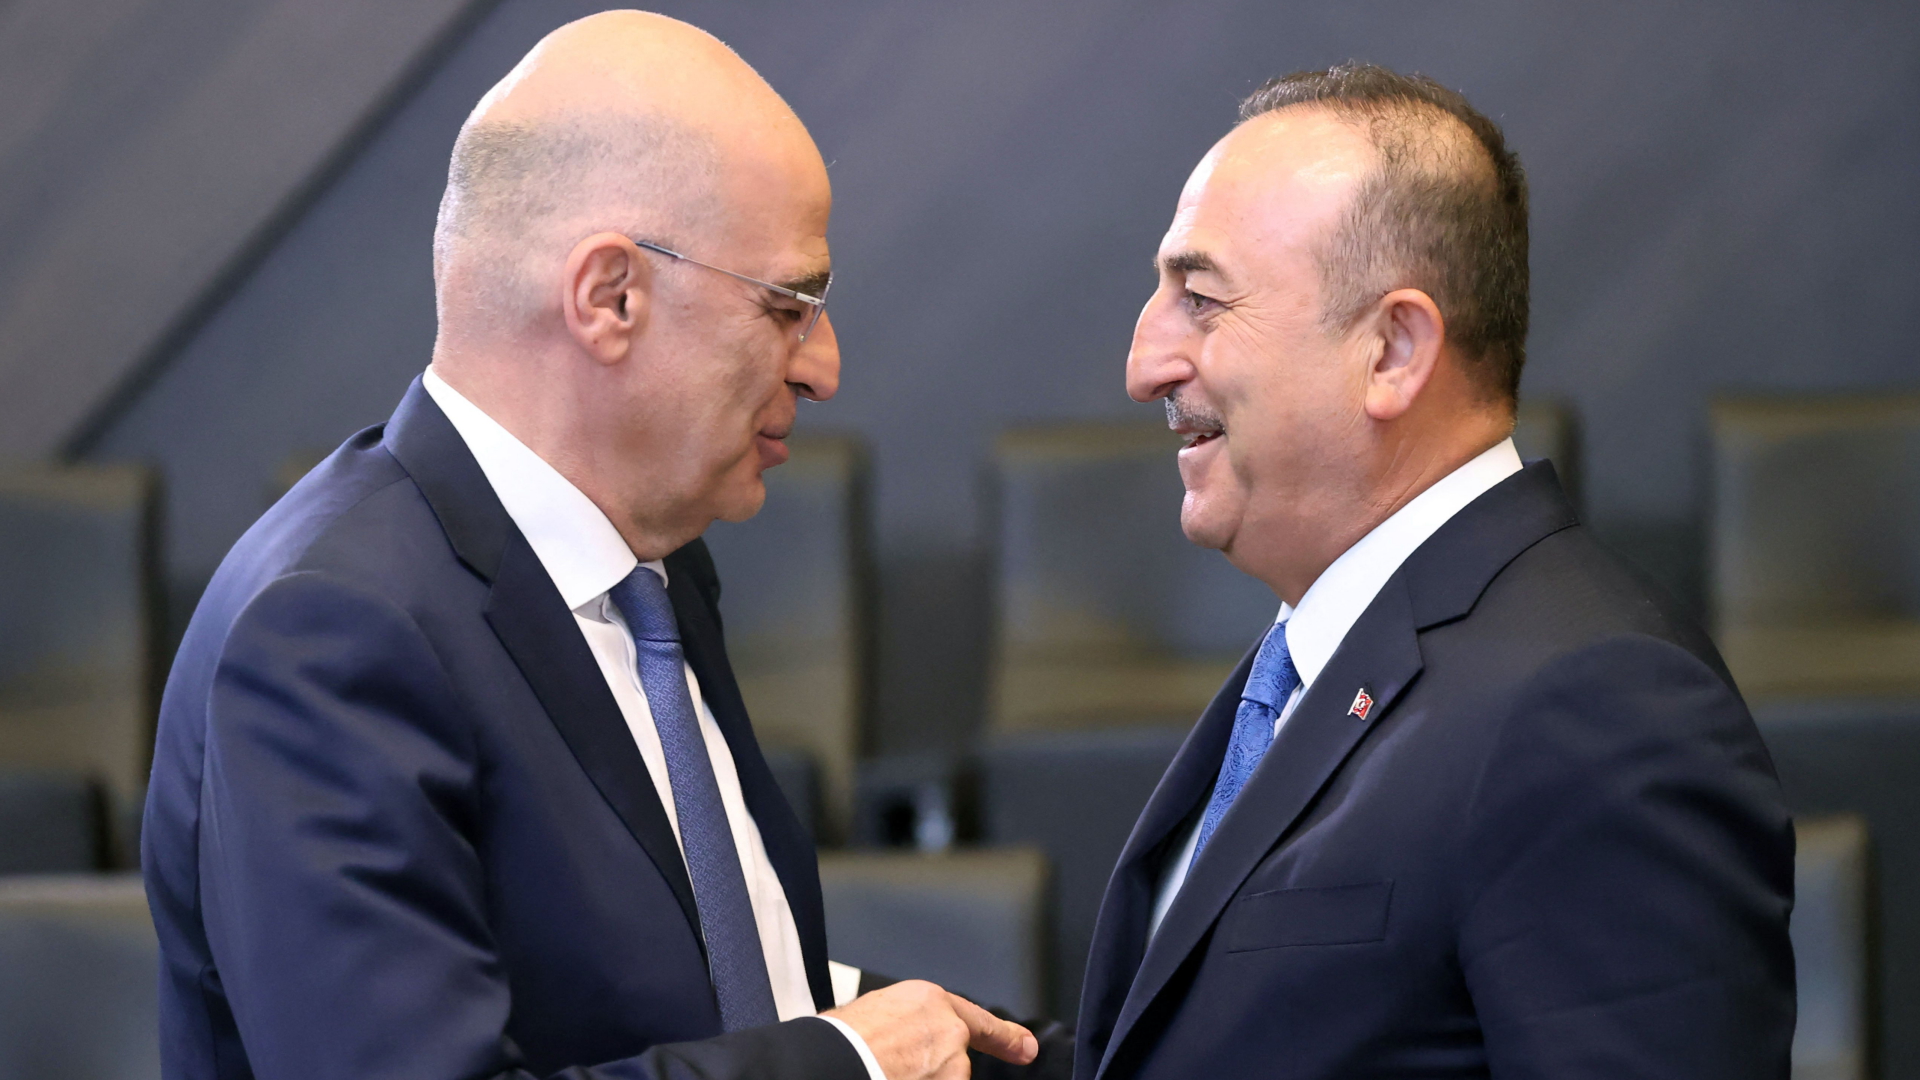 Die Außenminister Dendias und Cavusoglu im Gespräch | AFP